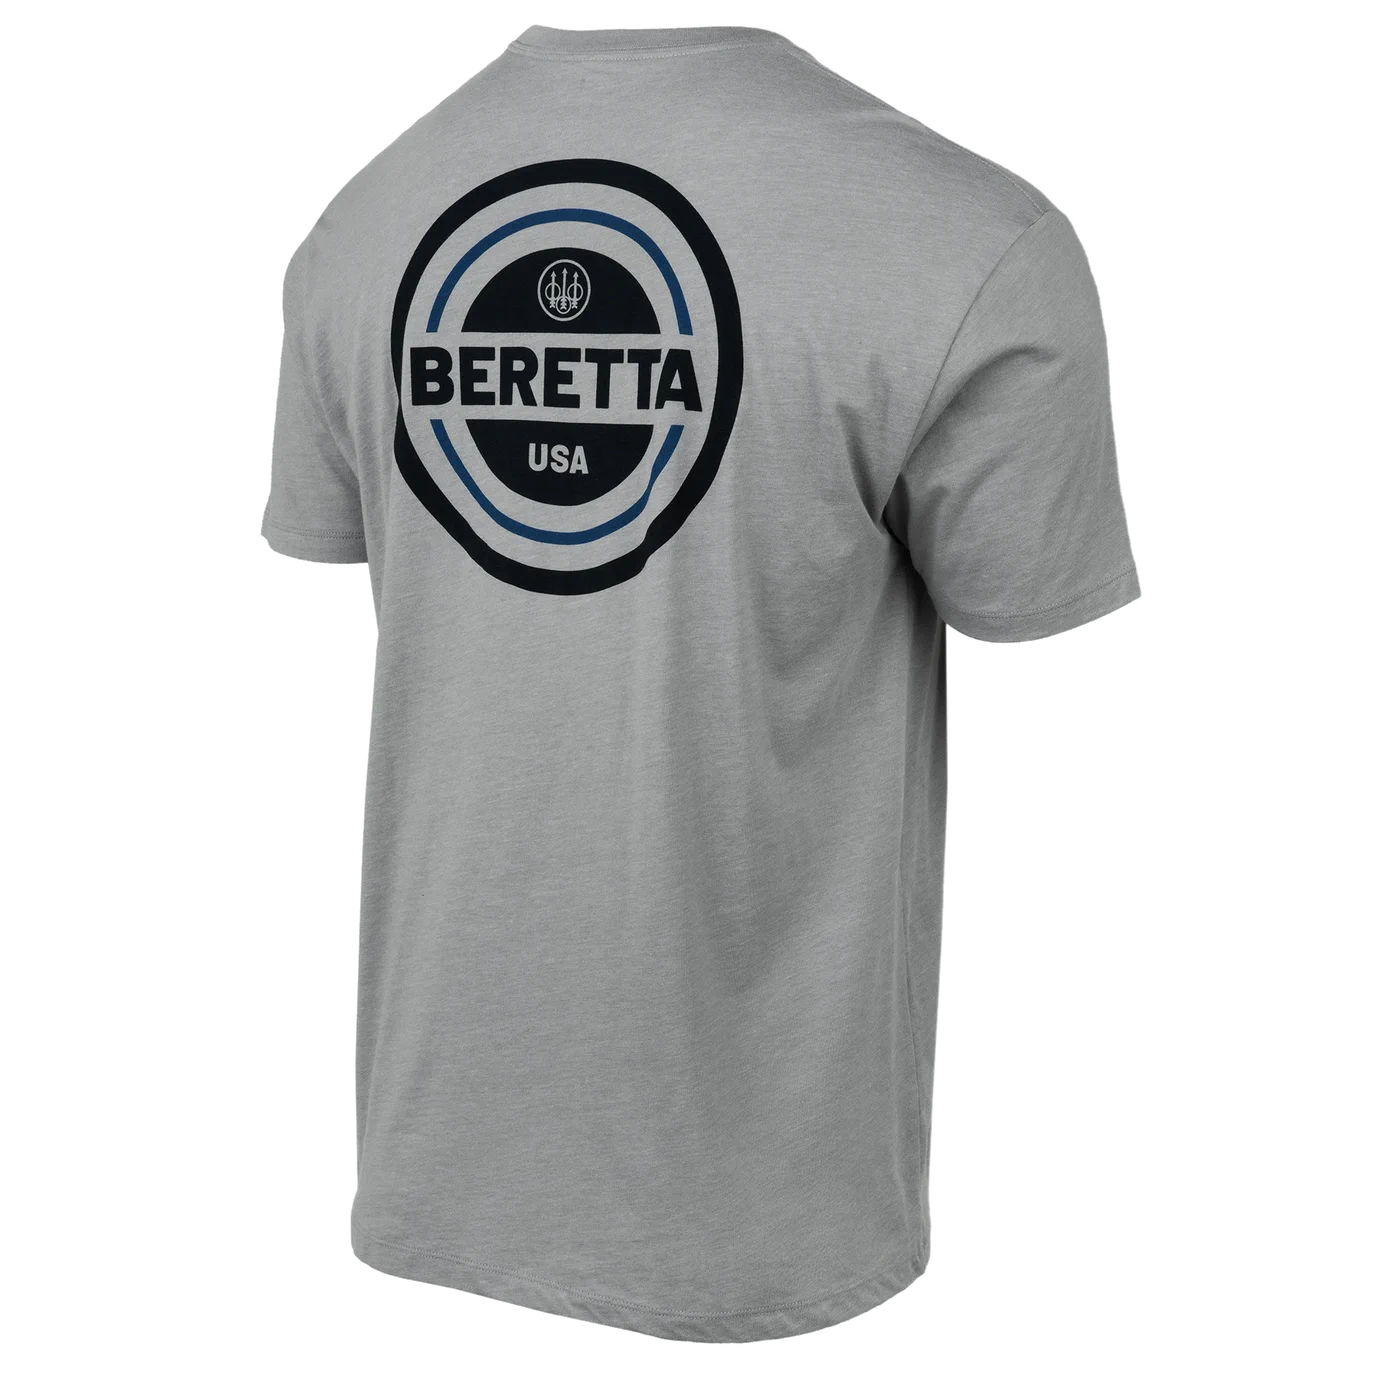 USA 2.0 Short Sleeve T-Shirt | Beretta